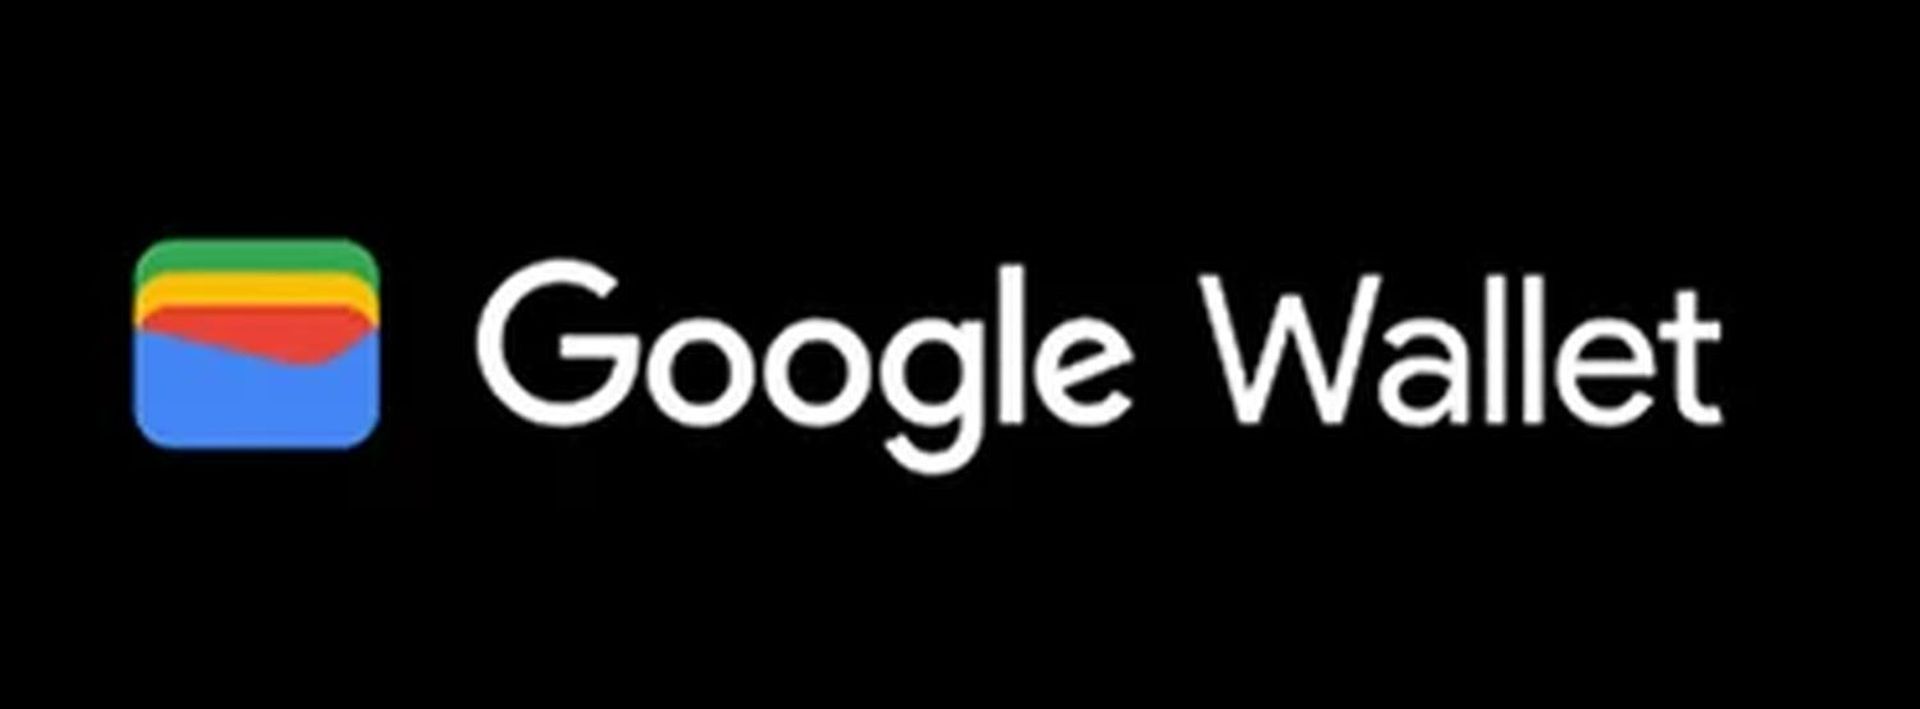 Meie põhjaliku juhendi abil saate teada, miks Google Wallet ei tööta! Samuti on Google Walleti alternatiivid, mida tasub proovida. Uurige kohe!